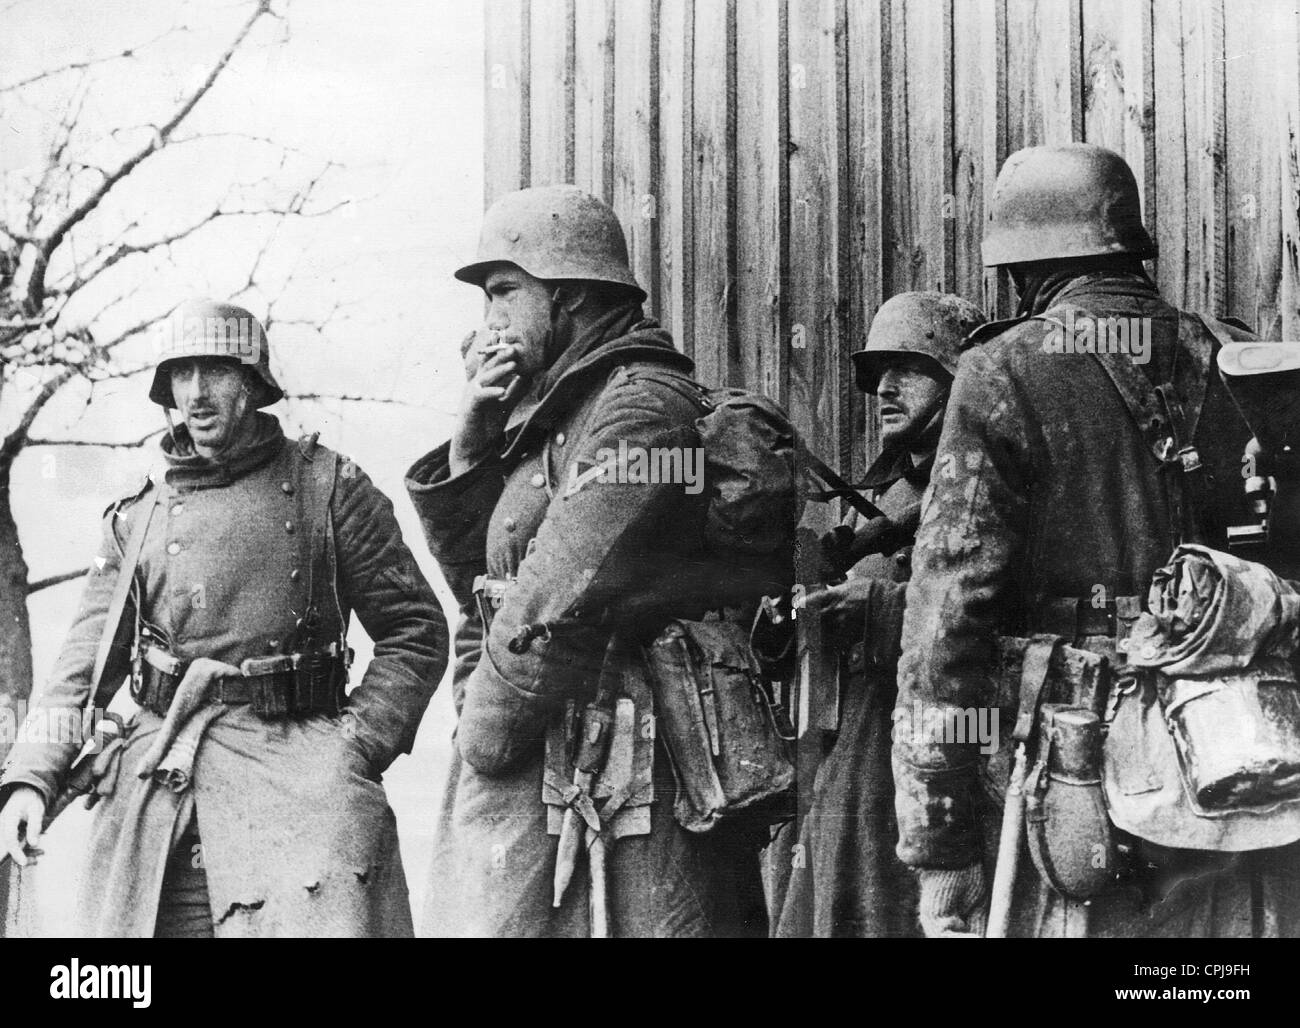 Soldats allemands en Prusse orientale, 1945 Banque D'Images